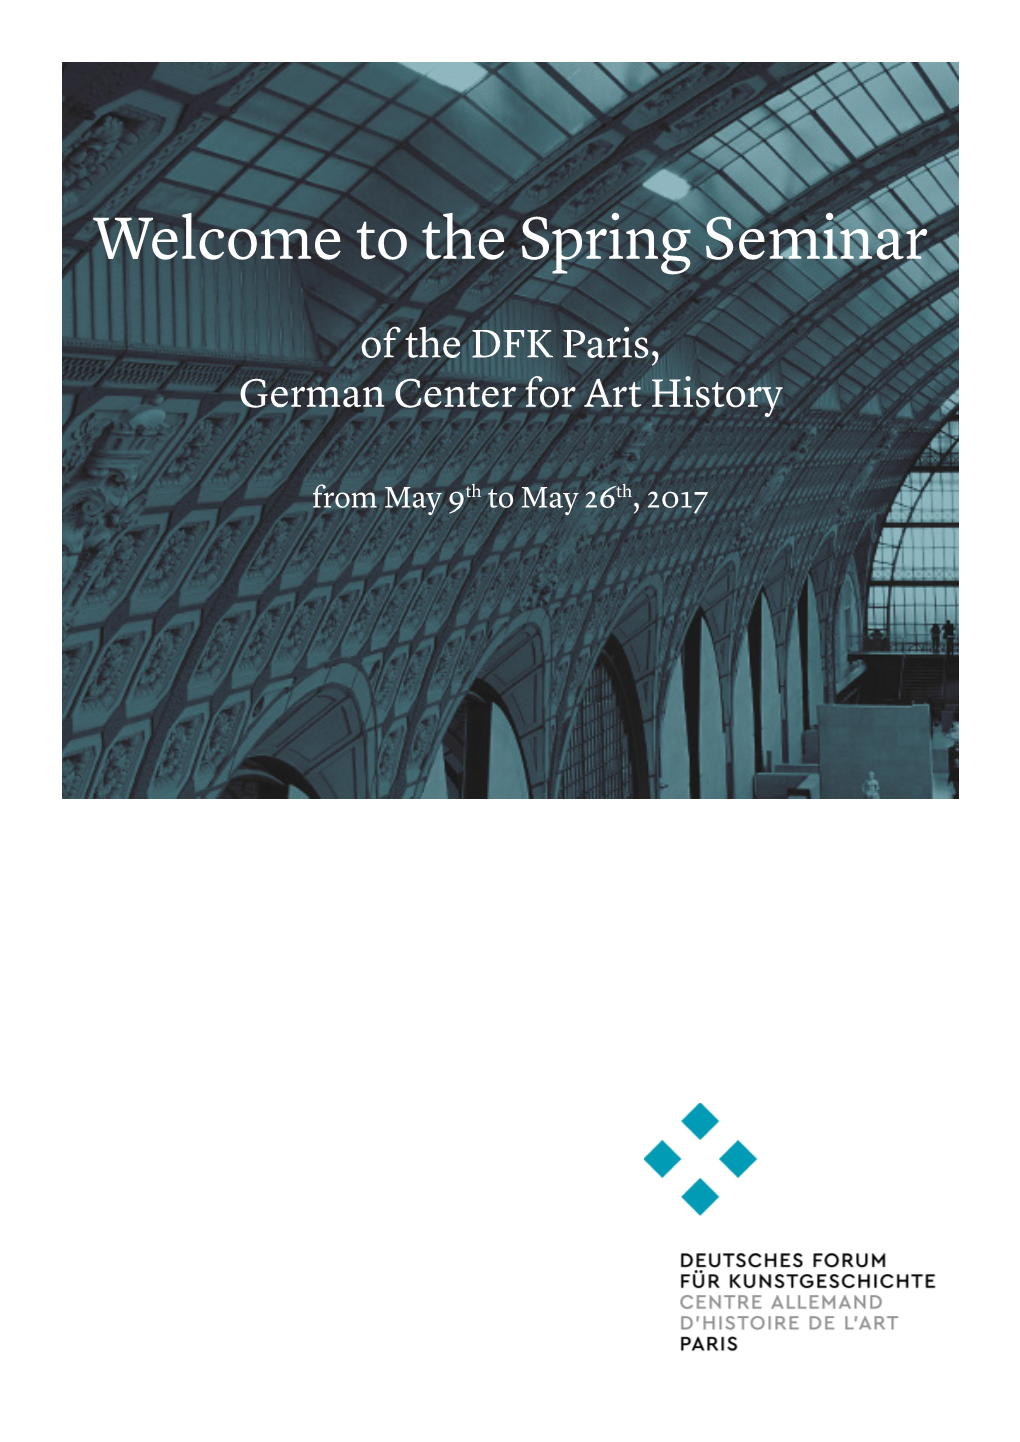 The Spring Seminar